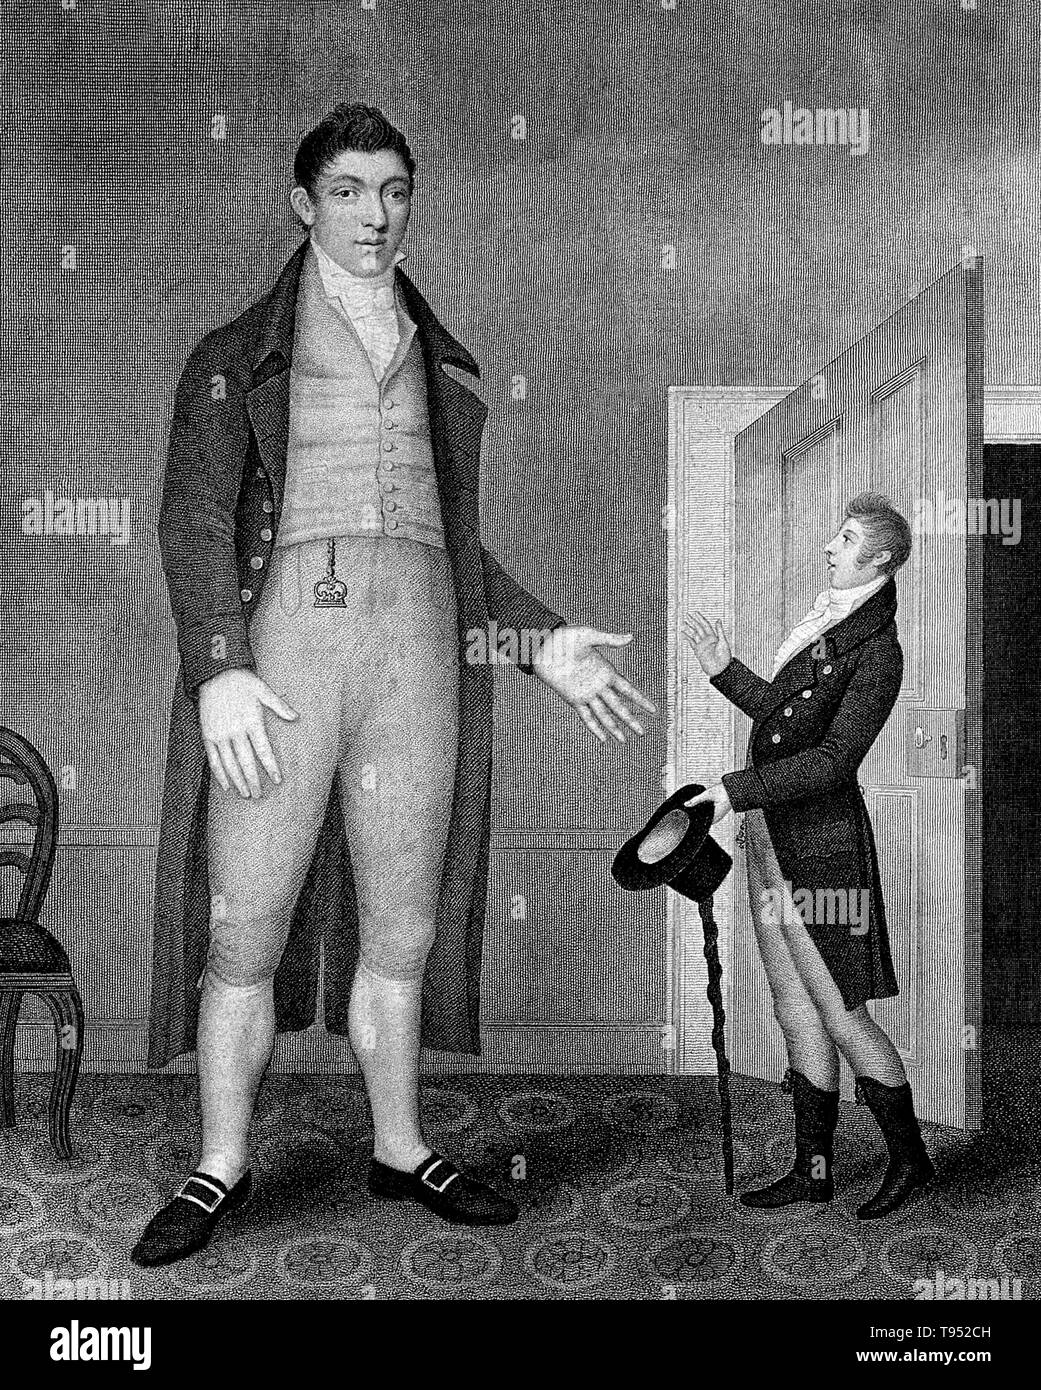 Bradley im Alter von 18 Jahren. Seine Maßnahmen in der Bildunterschrift: Höhe 7 Fuß 8 Zoll, brustumfang 4 Fuß 8 Zoll, Breite der Hand 5,25 Zoll, Fuß Länge 15,5 cm, Gewicht 375 Pfund. William Bradley (Februar 10, 1787 - Mai 30, 1820) ist die höchste aufgezeichnete Britischer Mann, der je gelebt, Messung 7 Fuß 9 Zoll hoch. Er war der vierte Sohn in einer Familie von dreizehn und wog 14 Pfund bei der Geburt. Er reiste mit einer Gruppe von Schausteller unter dem Alias der Yorkshire Riese. Stockfoto